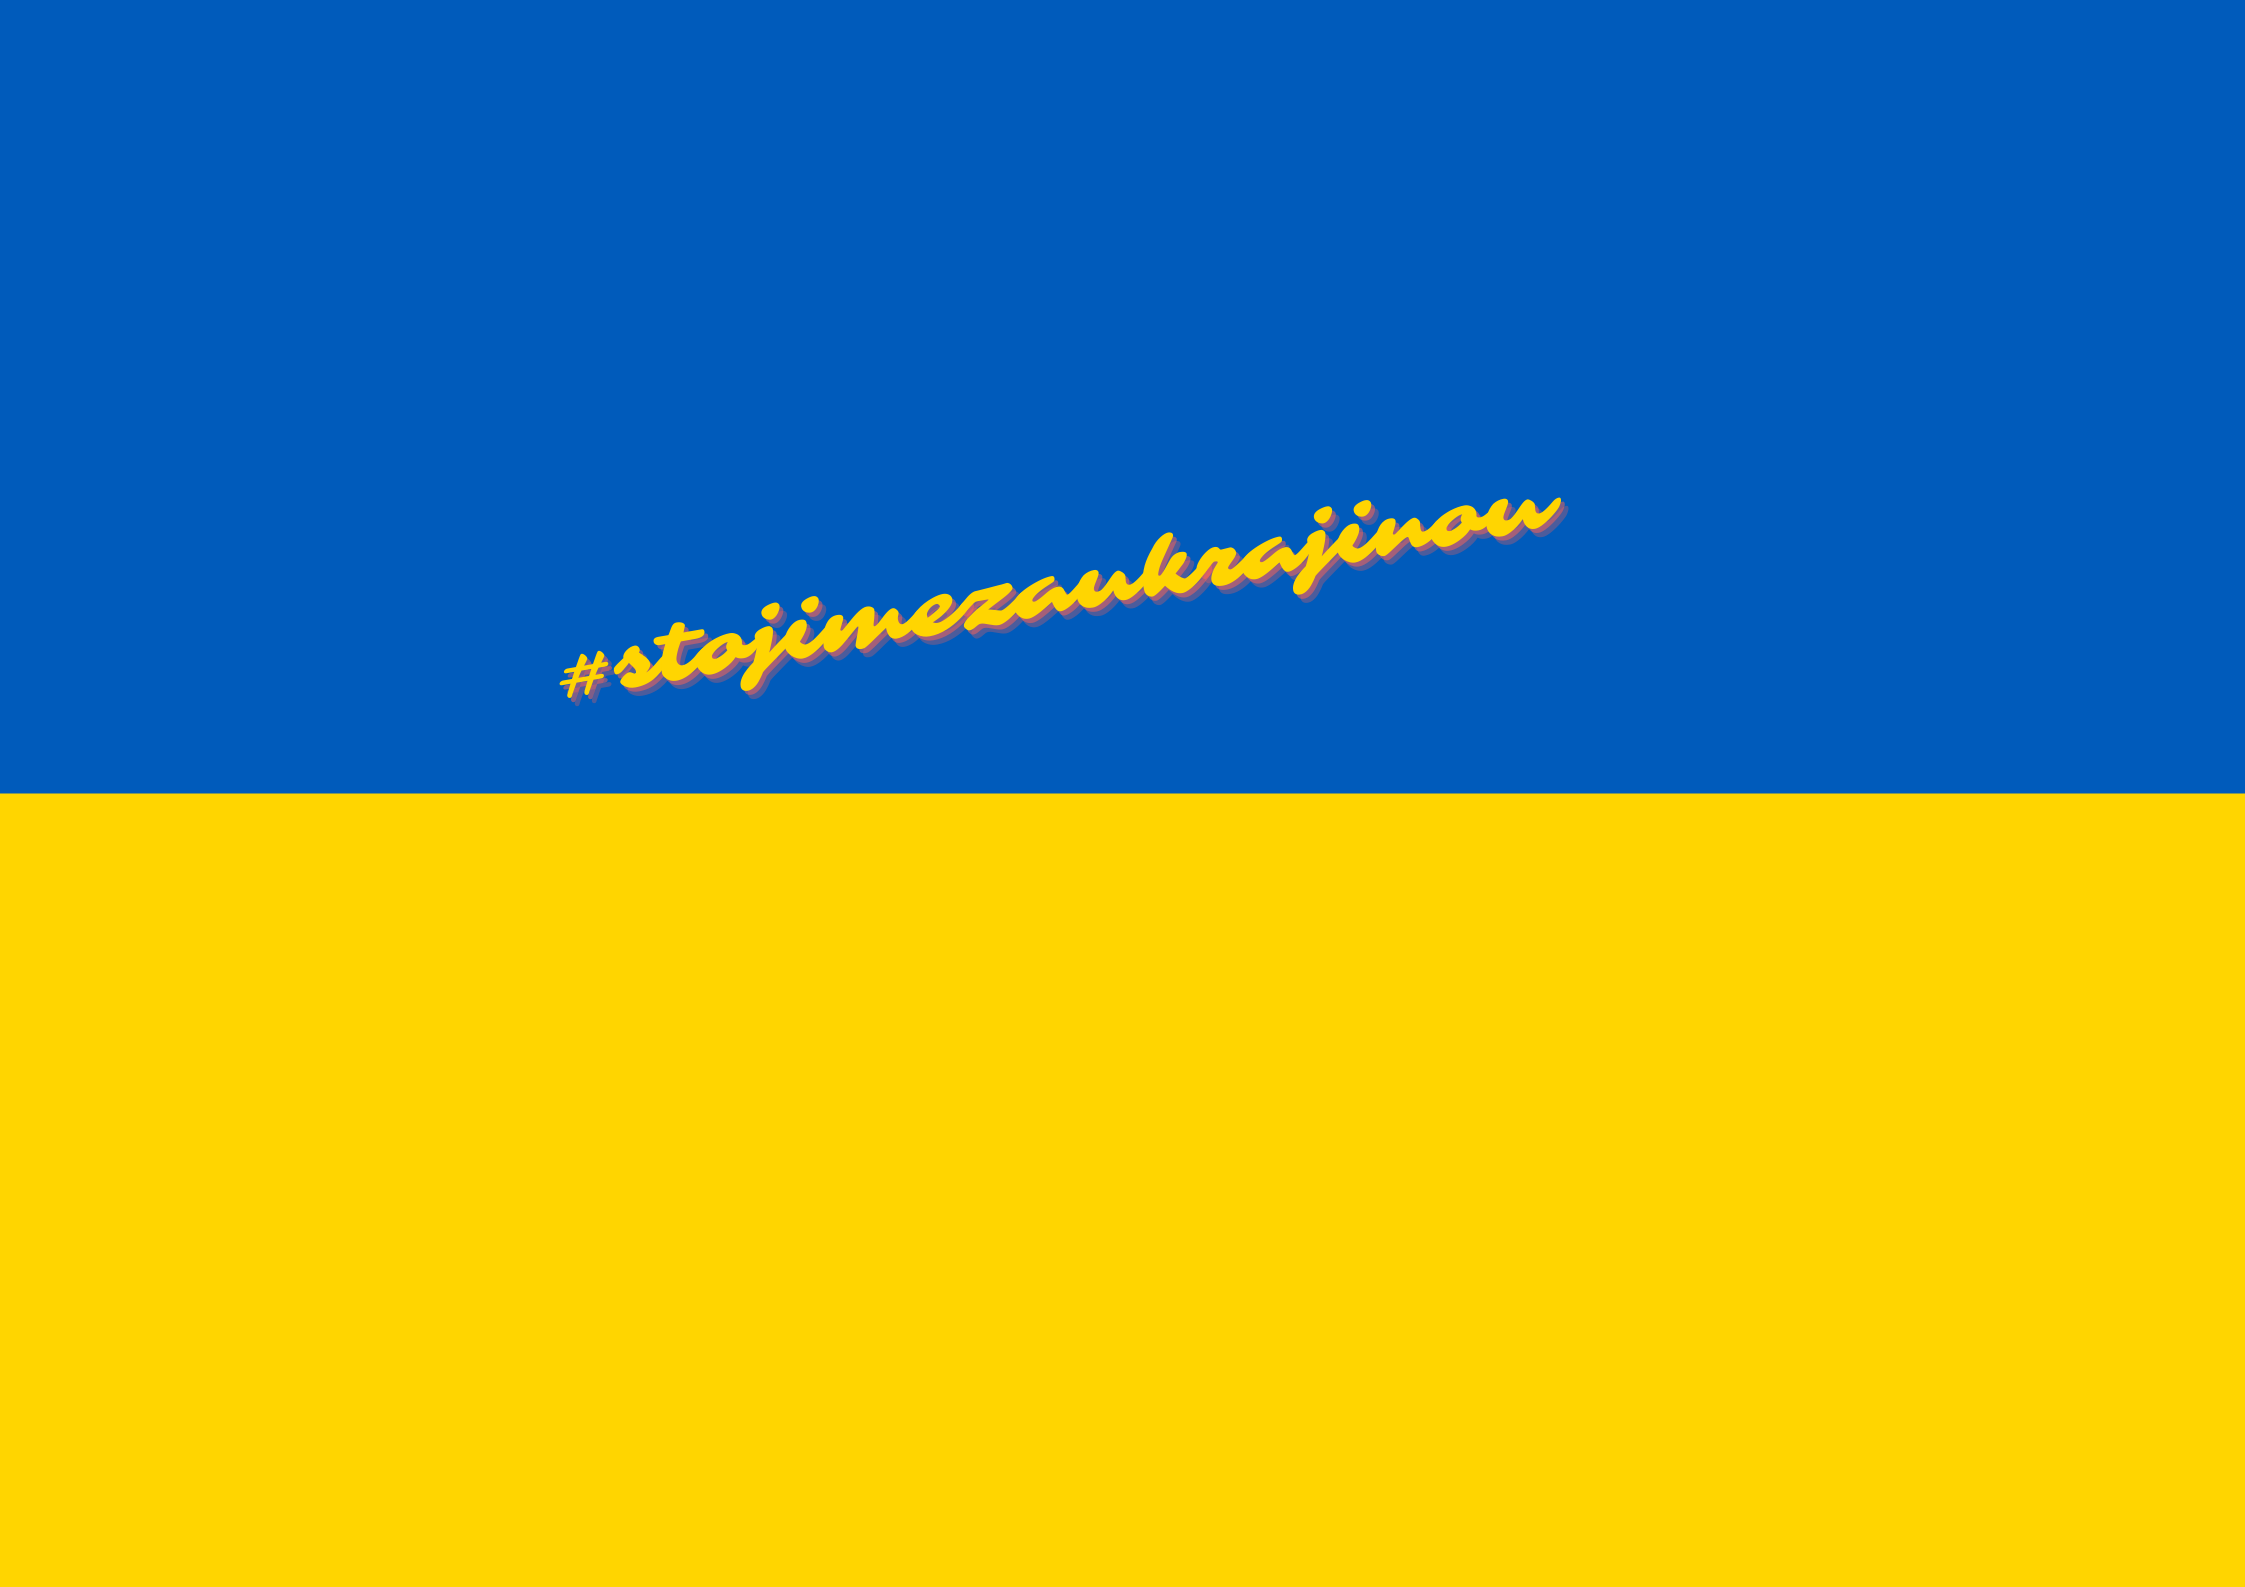 stojime za Ukrajinou